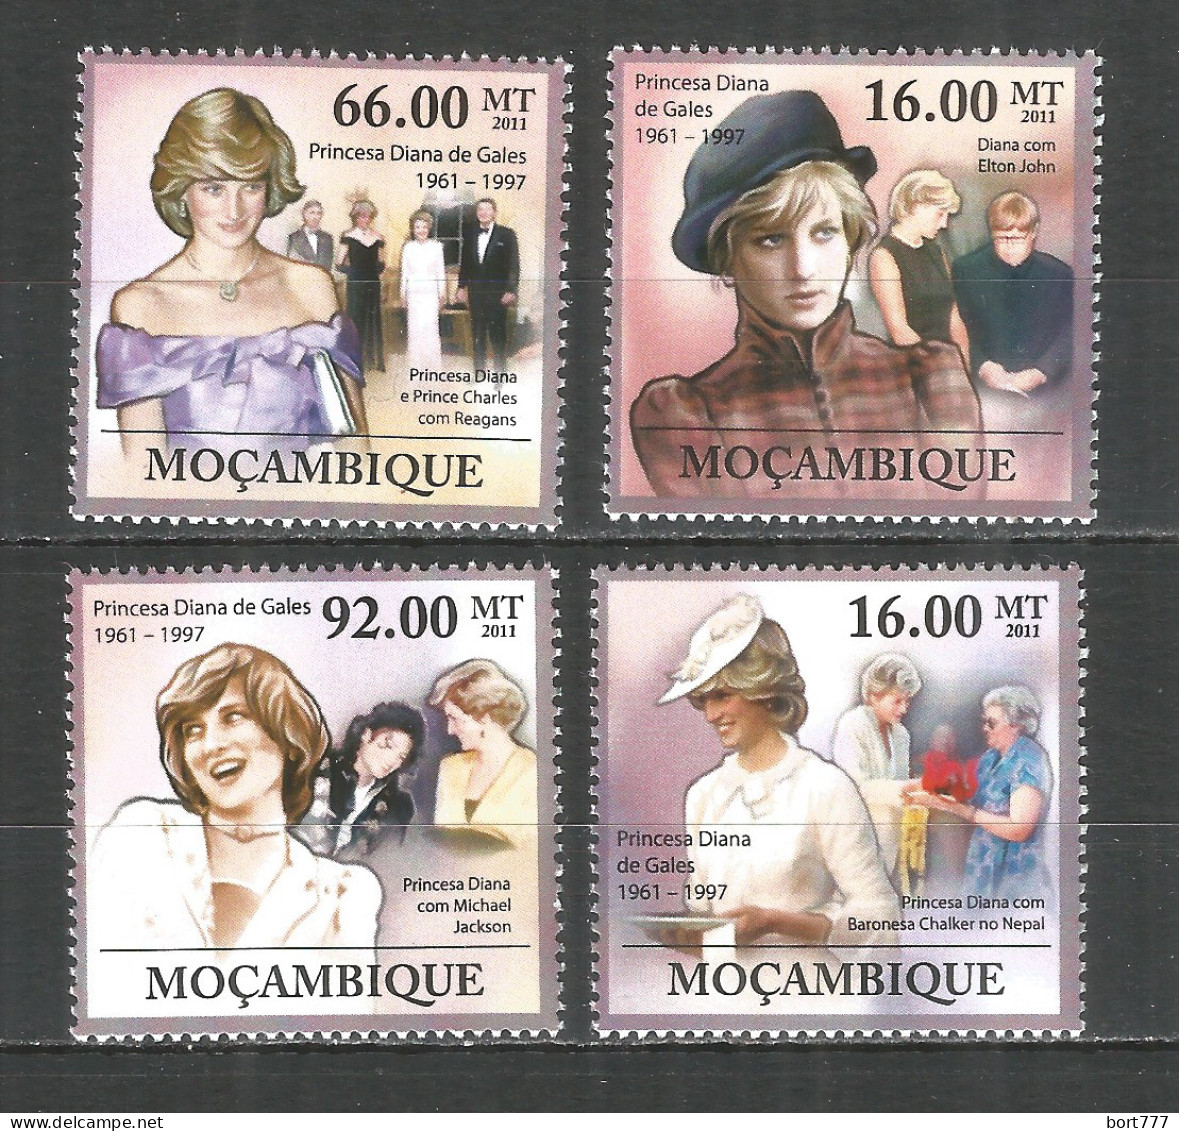 Mozambique 2009 Mint Stamps MNH(**) Princess Diana - Mozambique